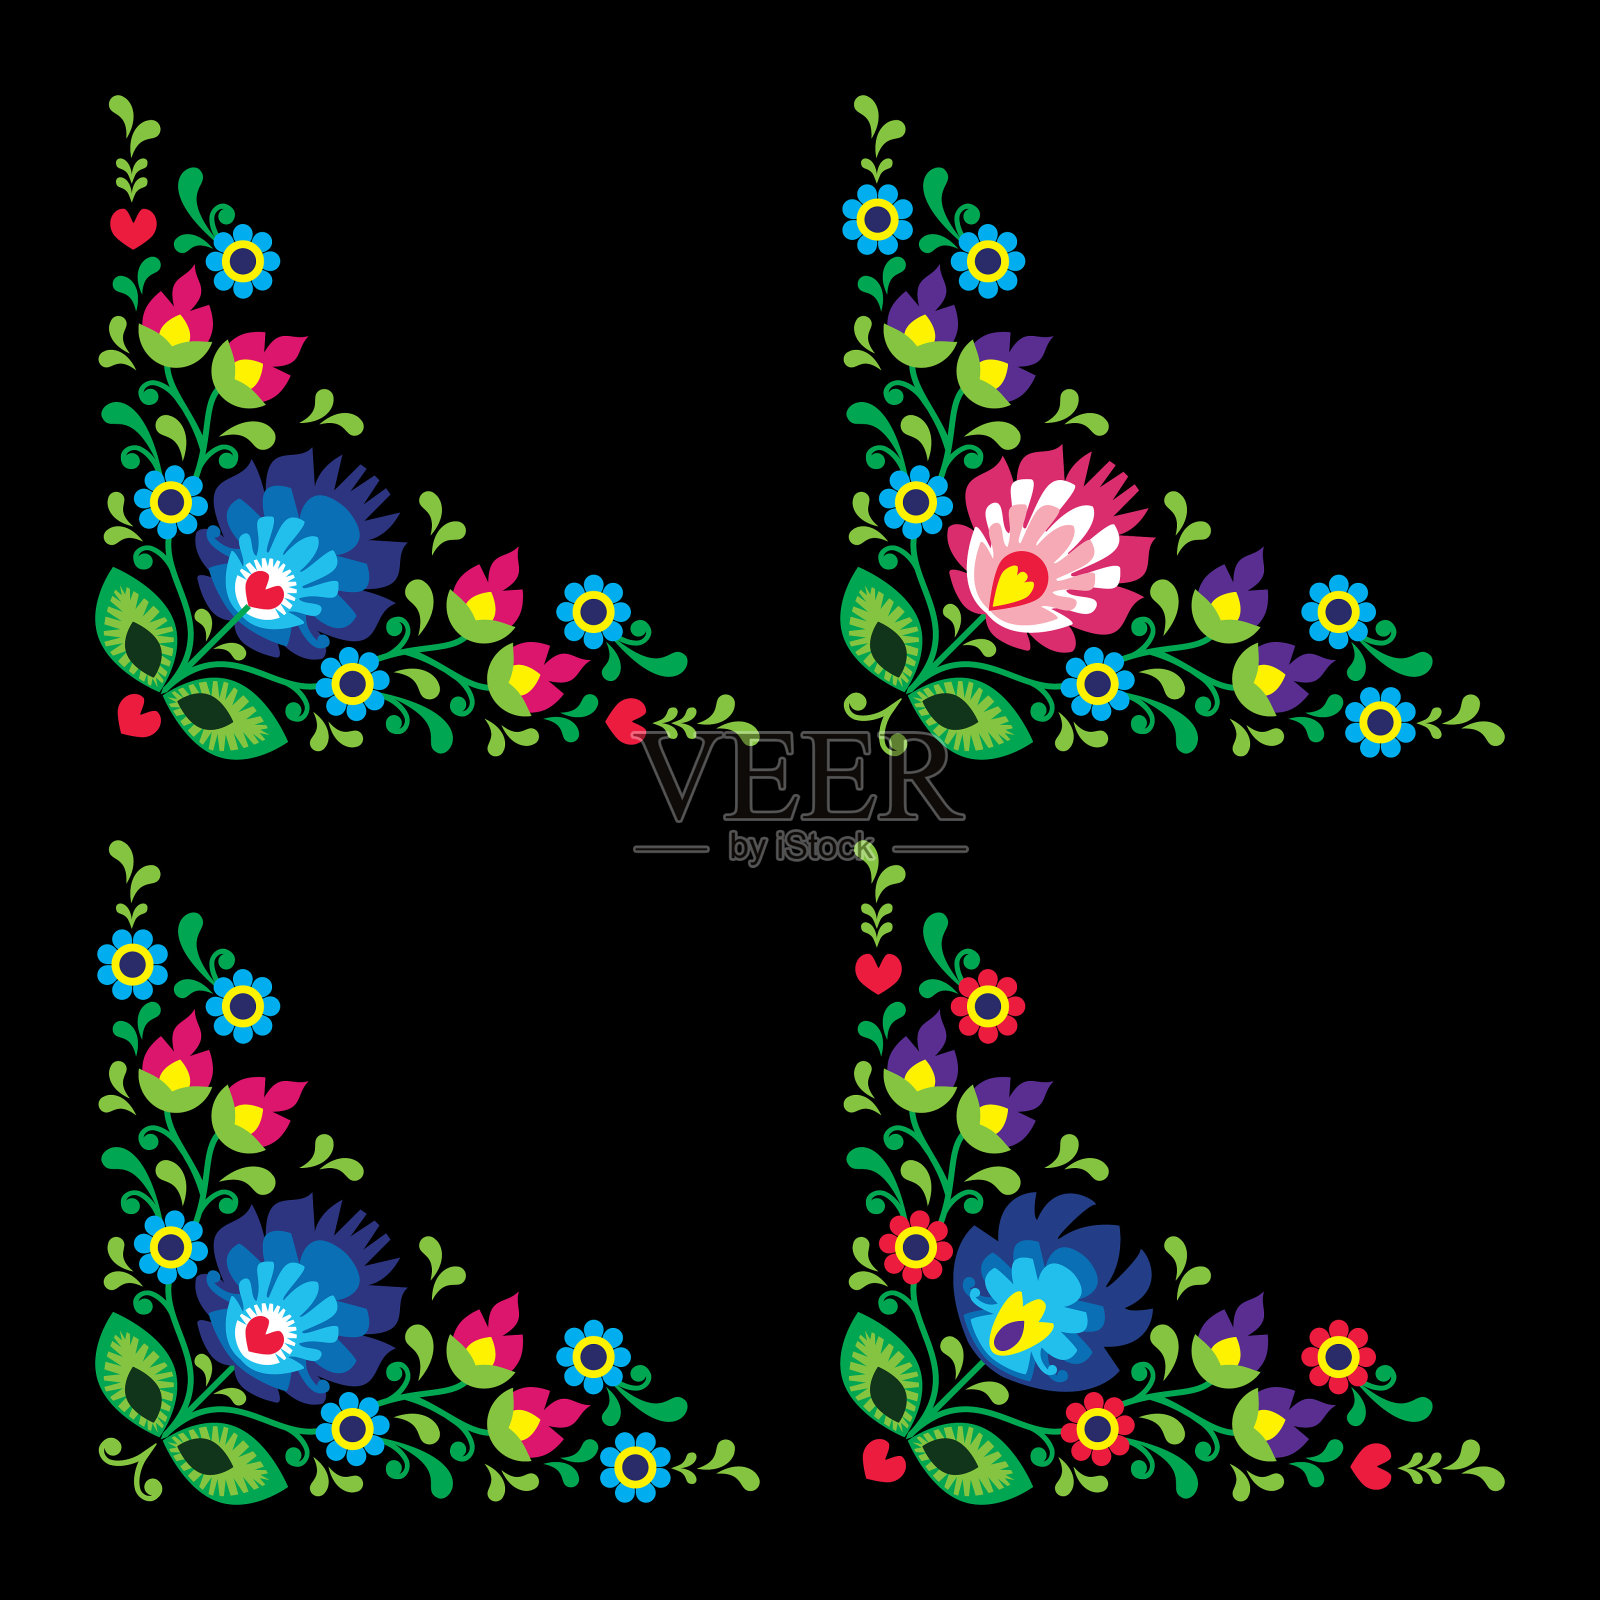 边角波兰民间花卉艺术矢量图案——Wzory Lowickie，传统图案插画图片素材